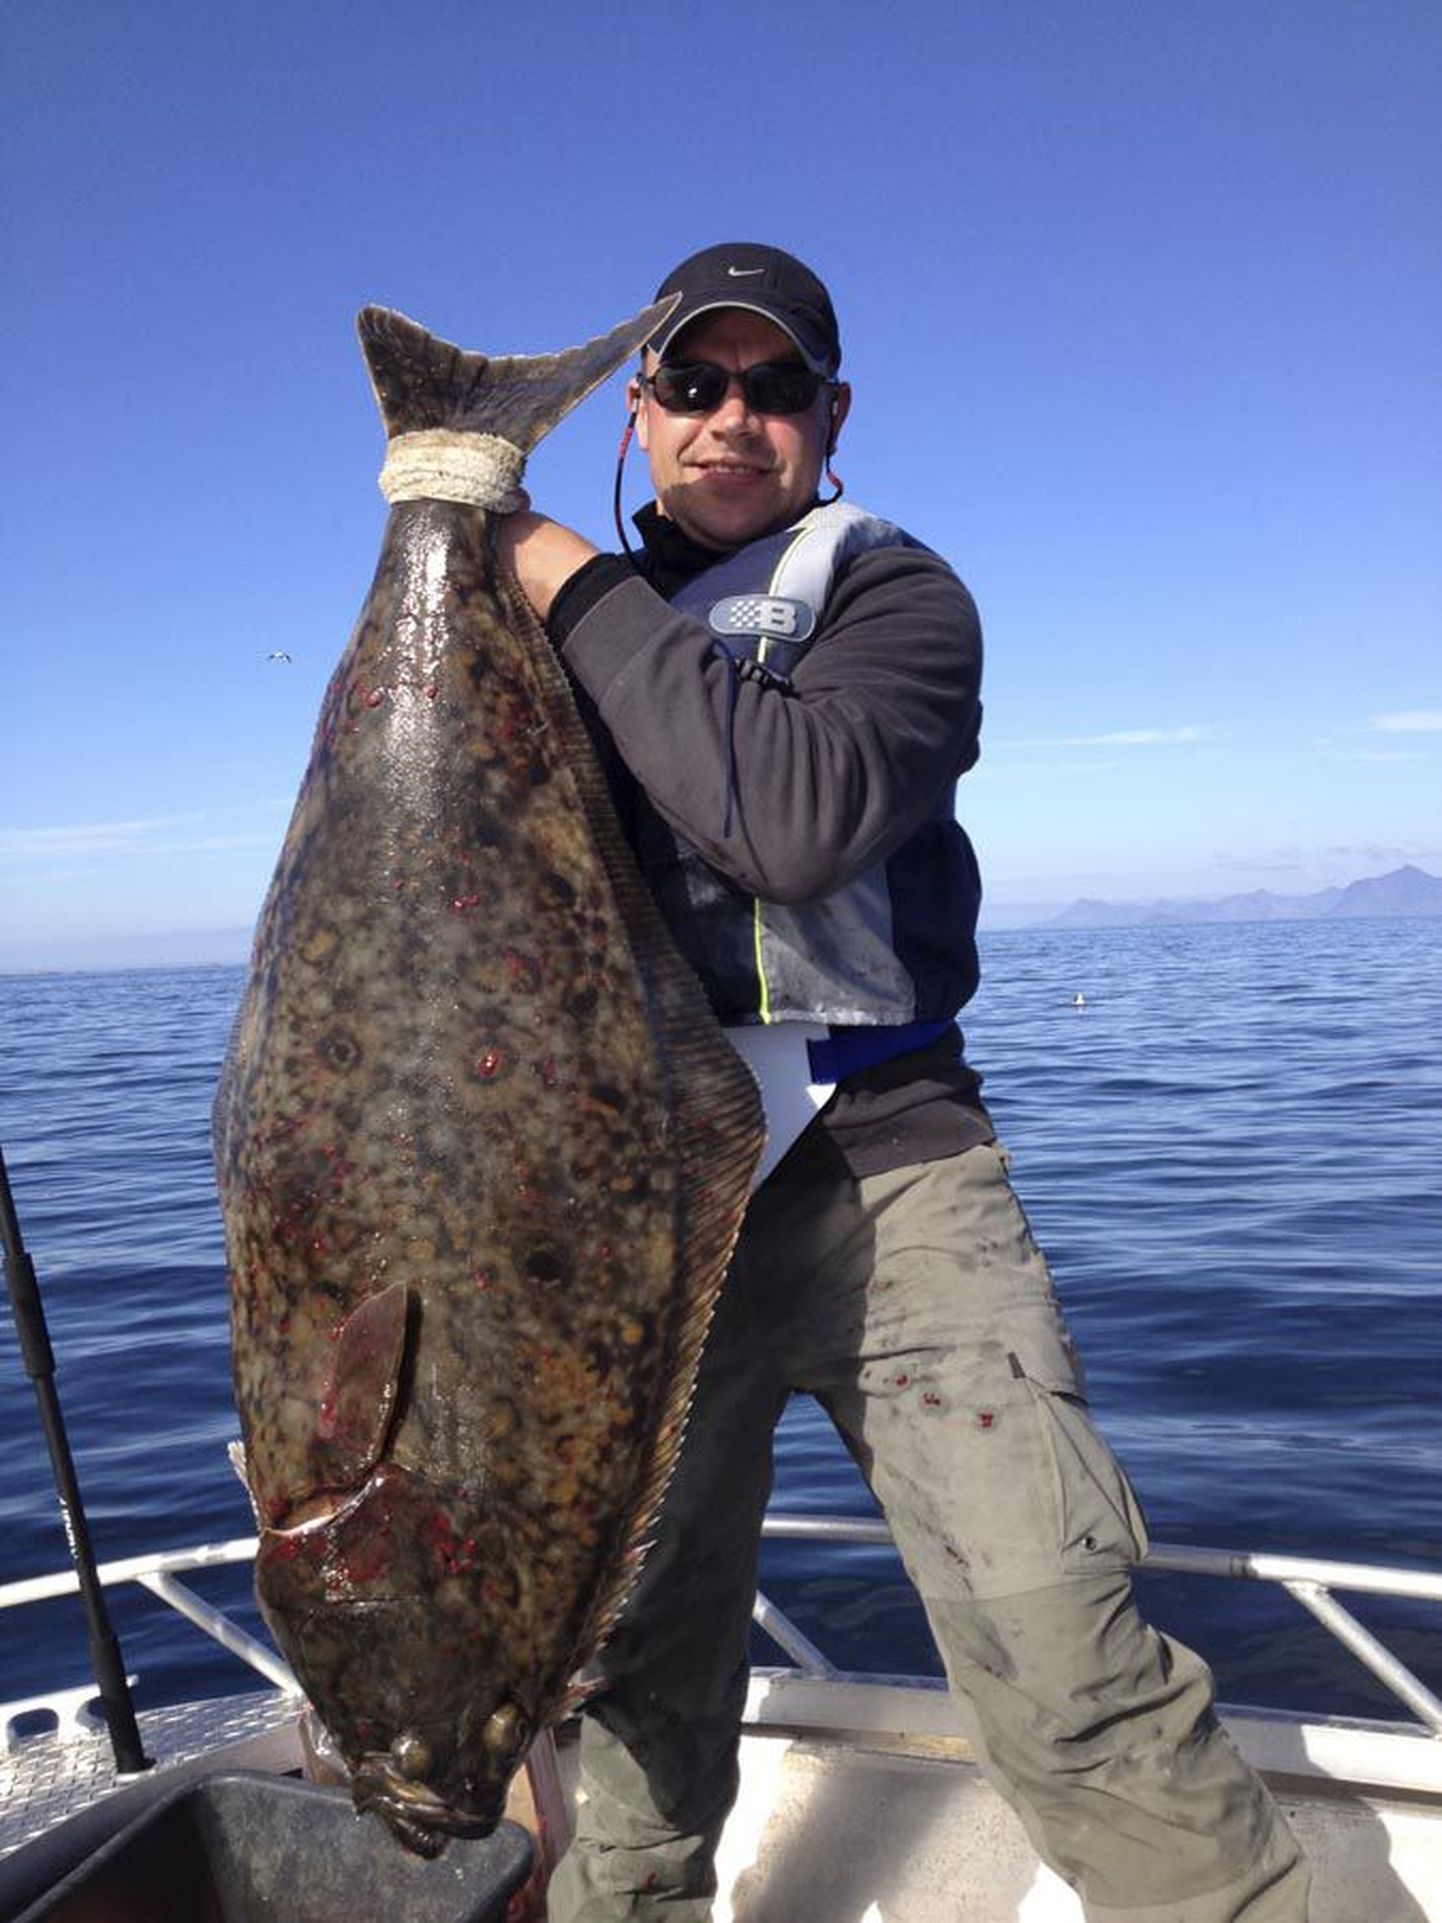 Michael Seerman püüdis välja 18,6-kilose paltuse. Selle liigi kalad on väga hinnatud trofeed, just nende püüdmiseks Norrasse minnaksegi.